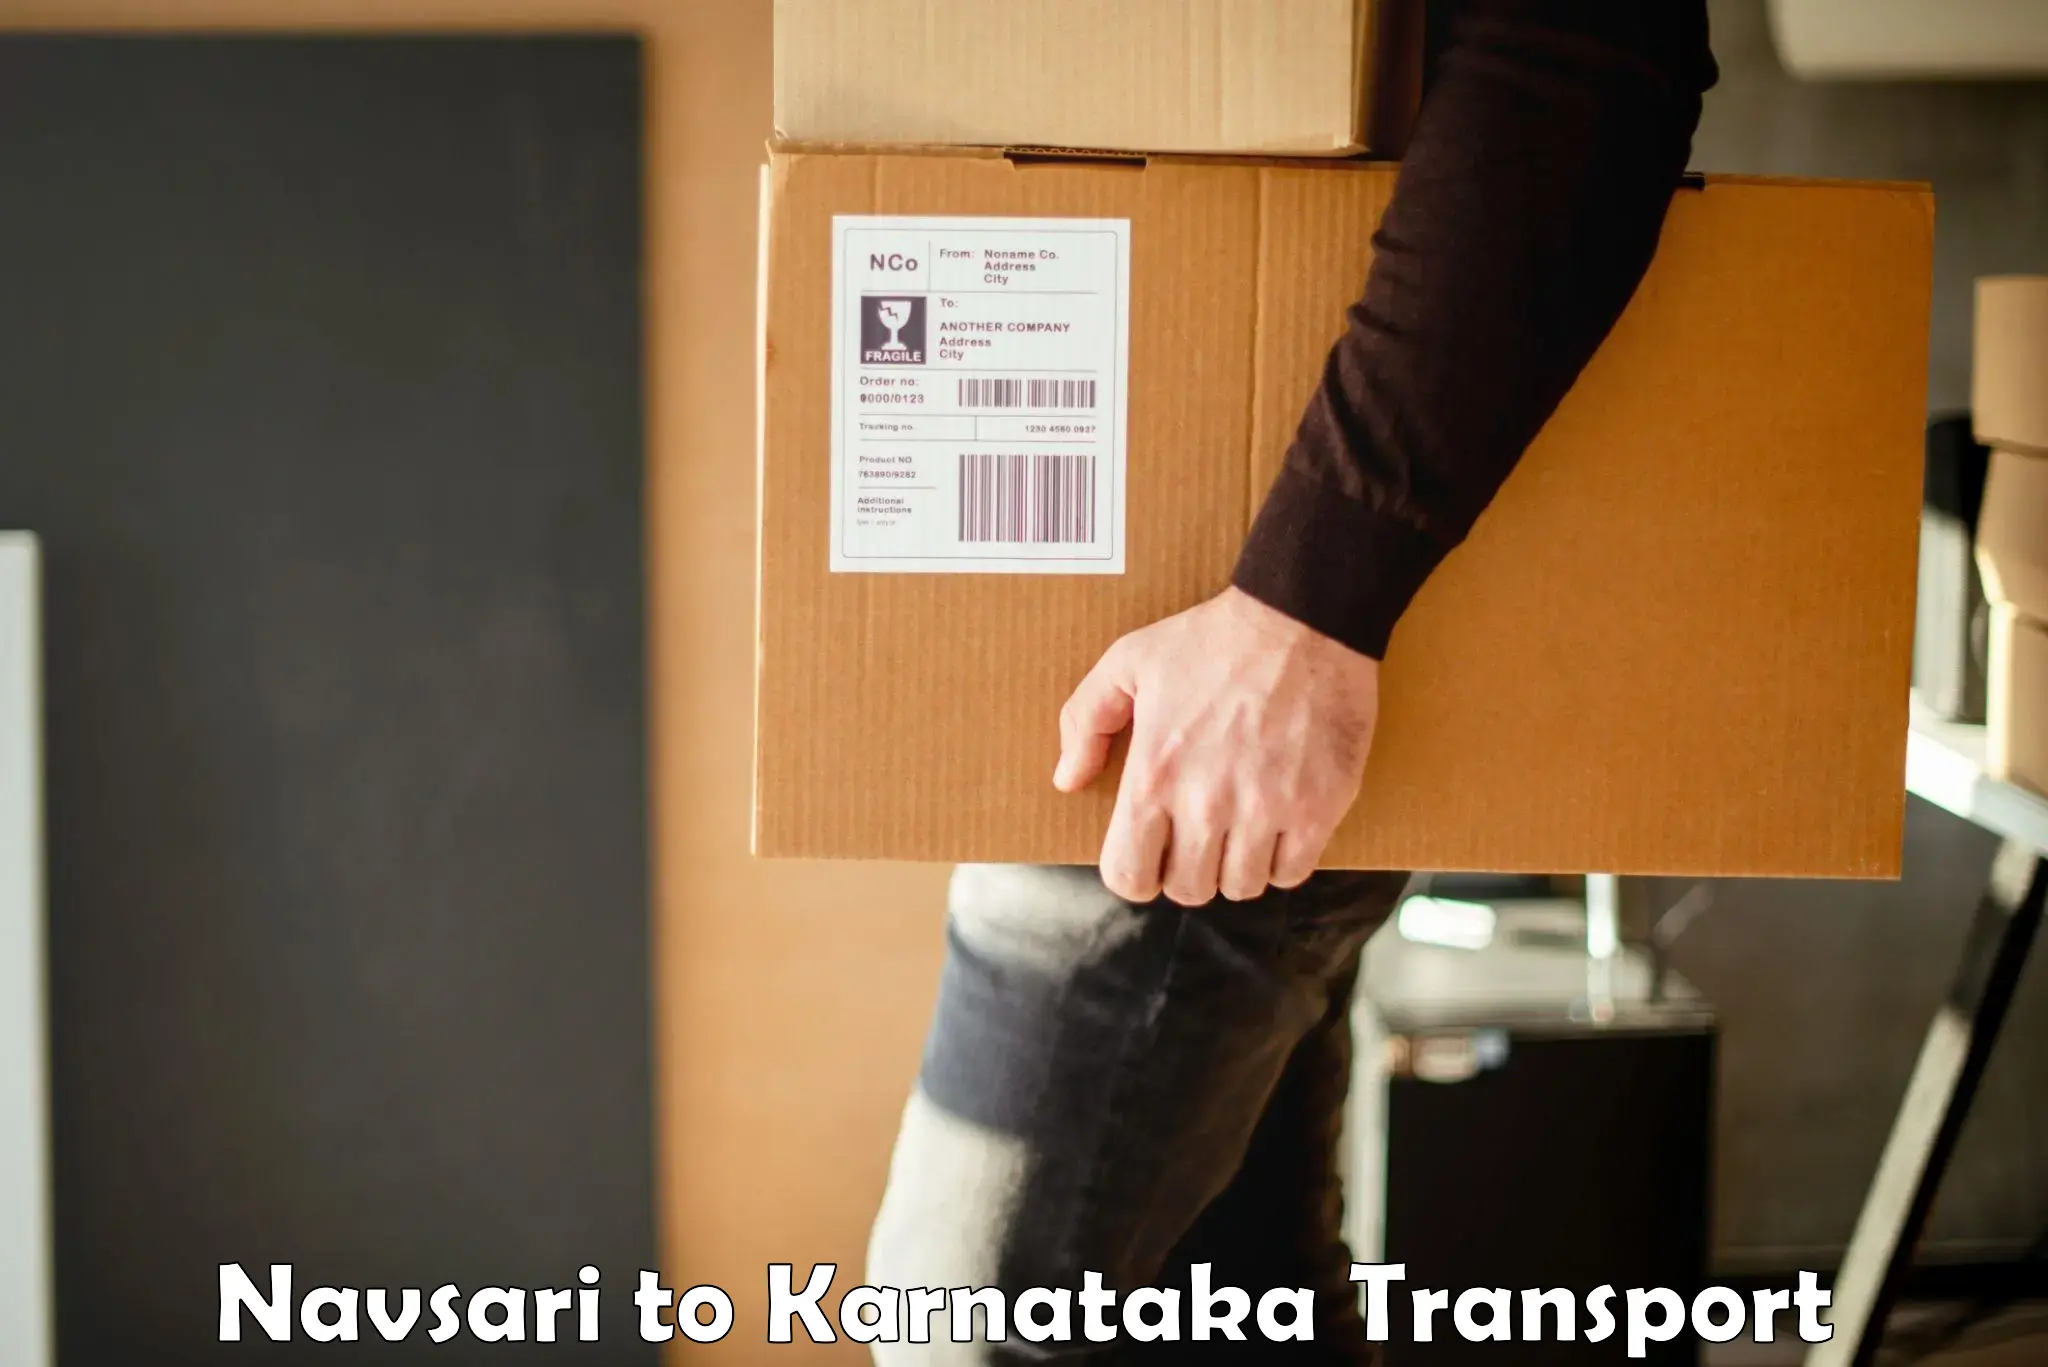 Transport shared services Navsari to Kulshekar